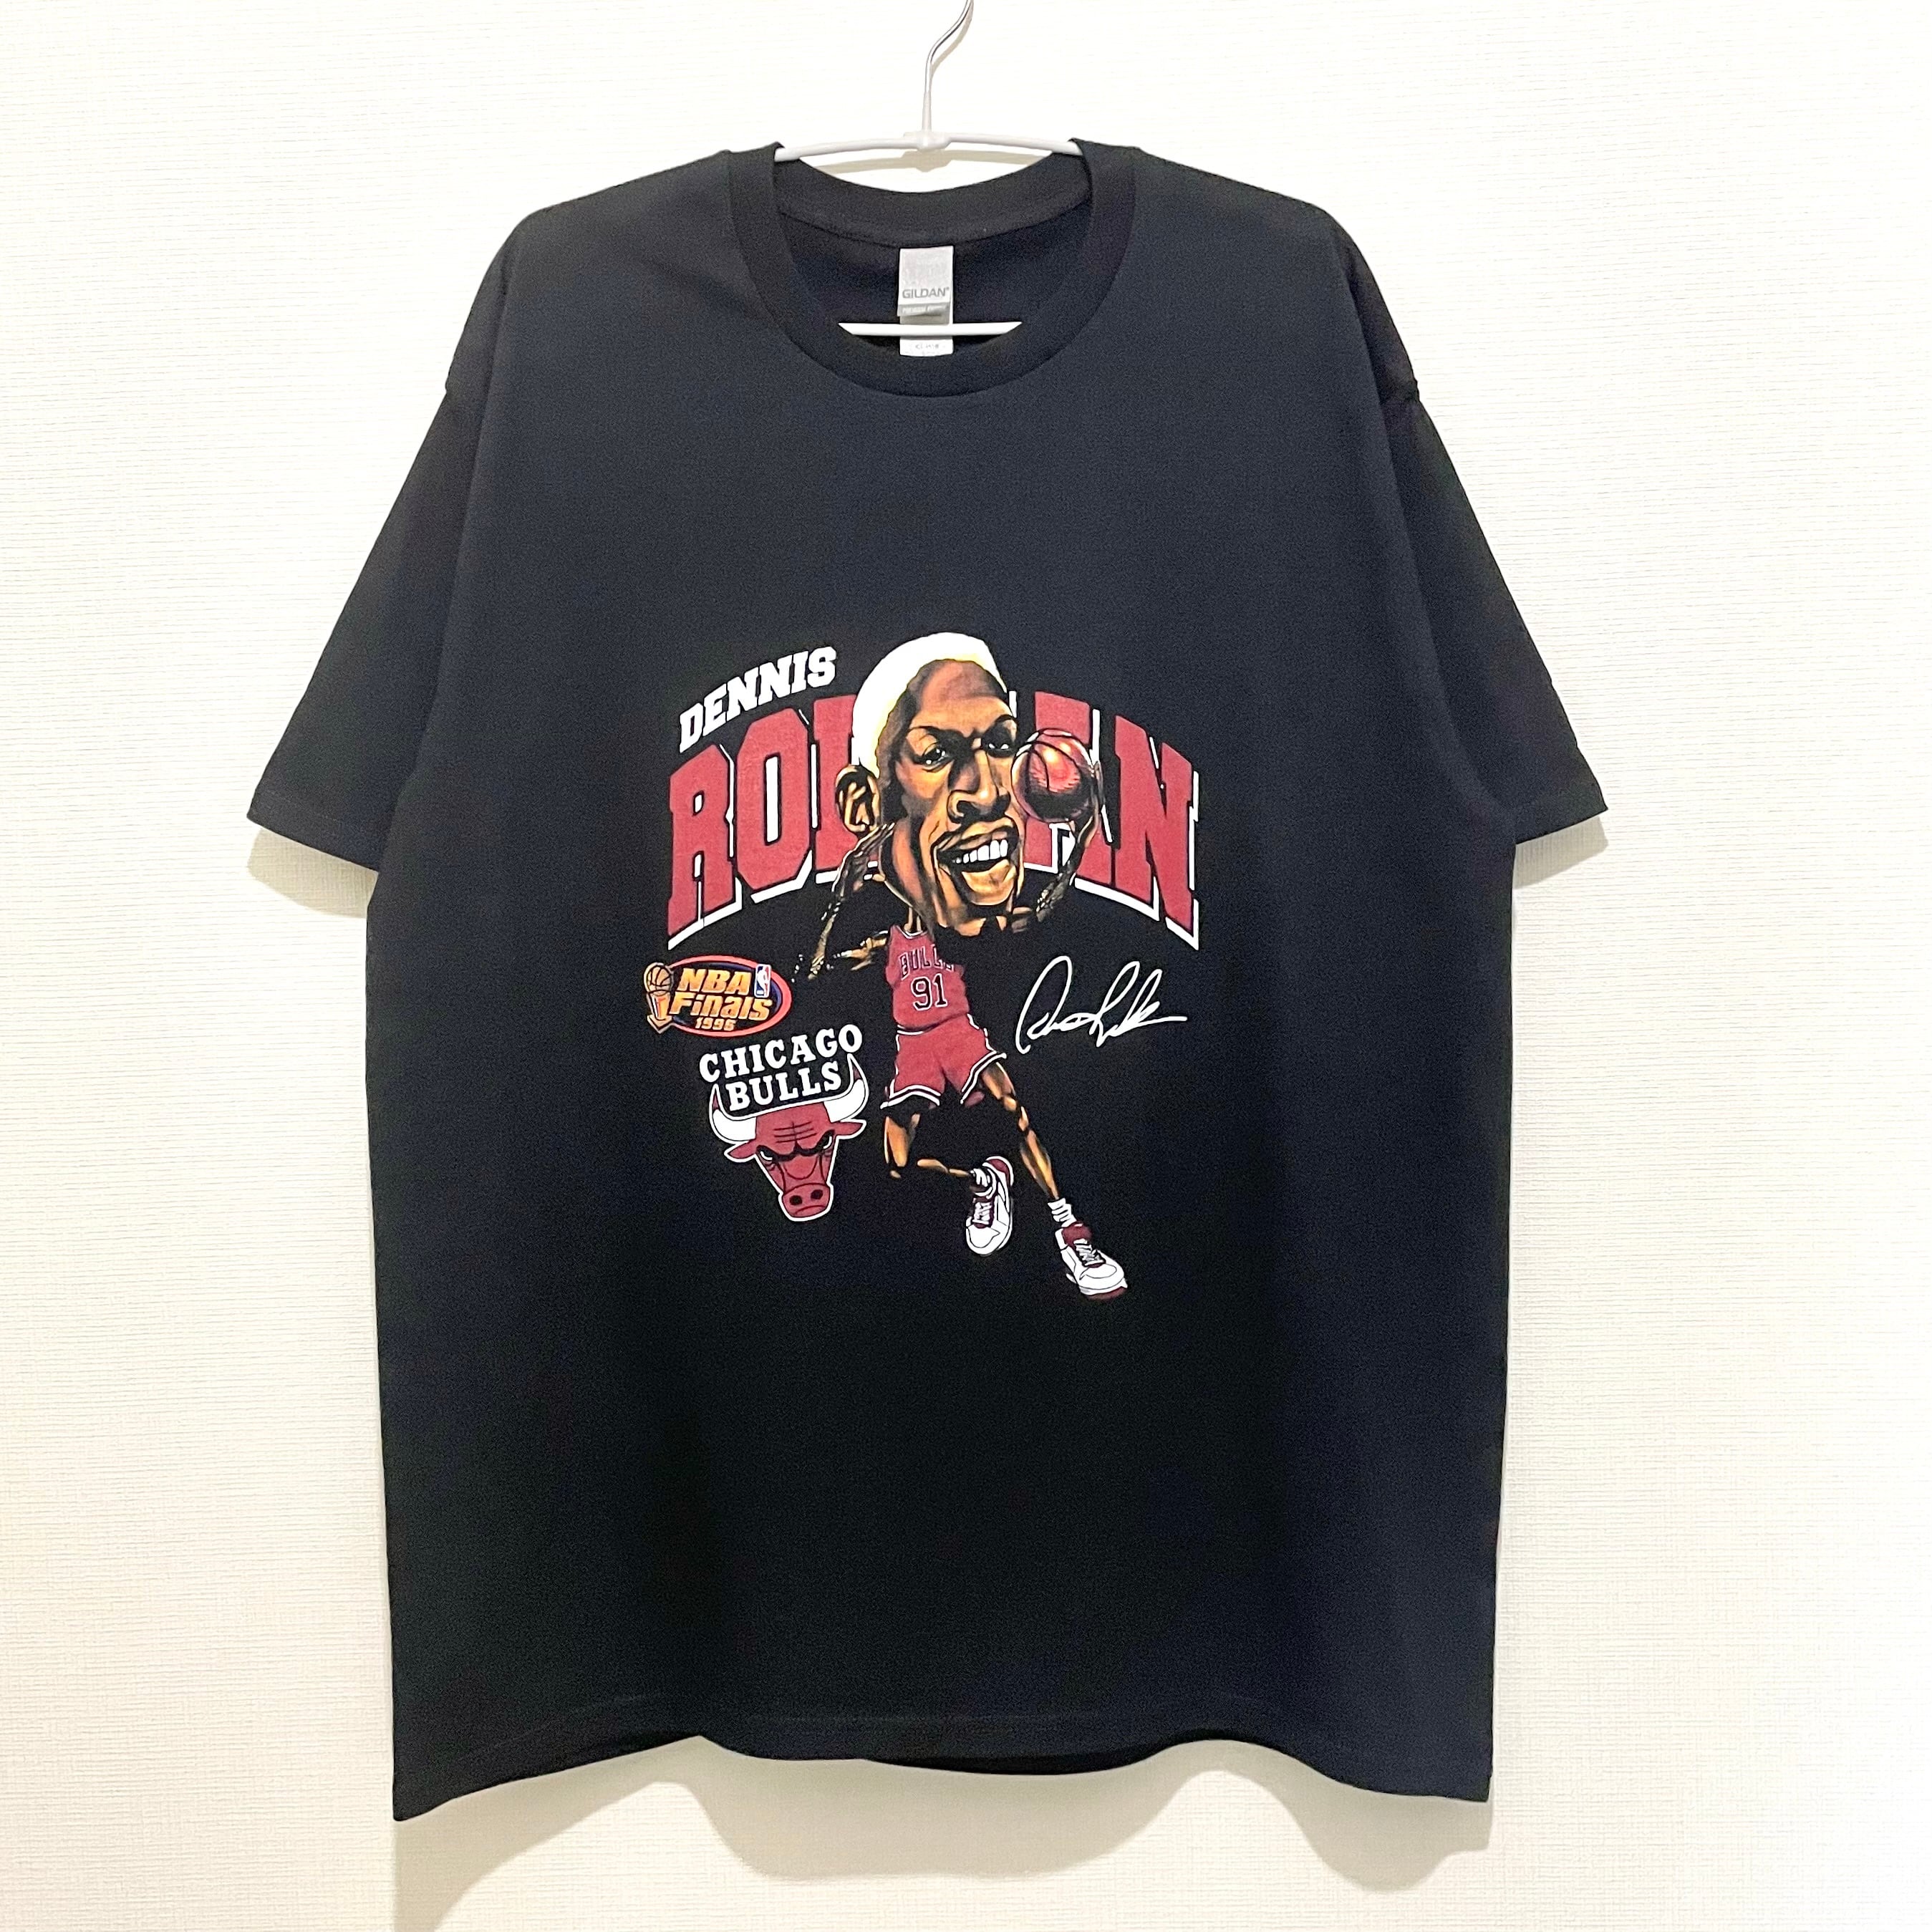 Rodman tシャツ